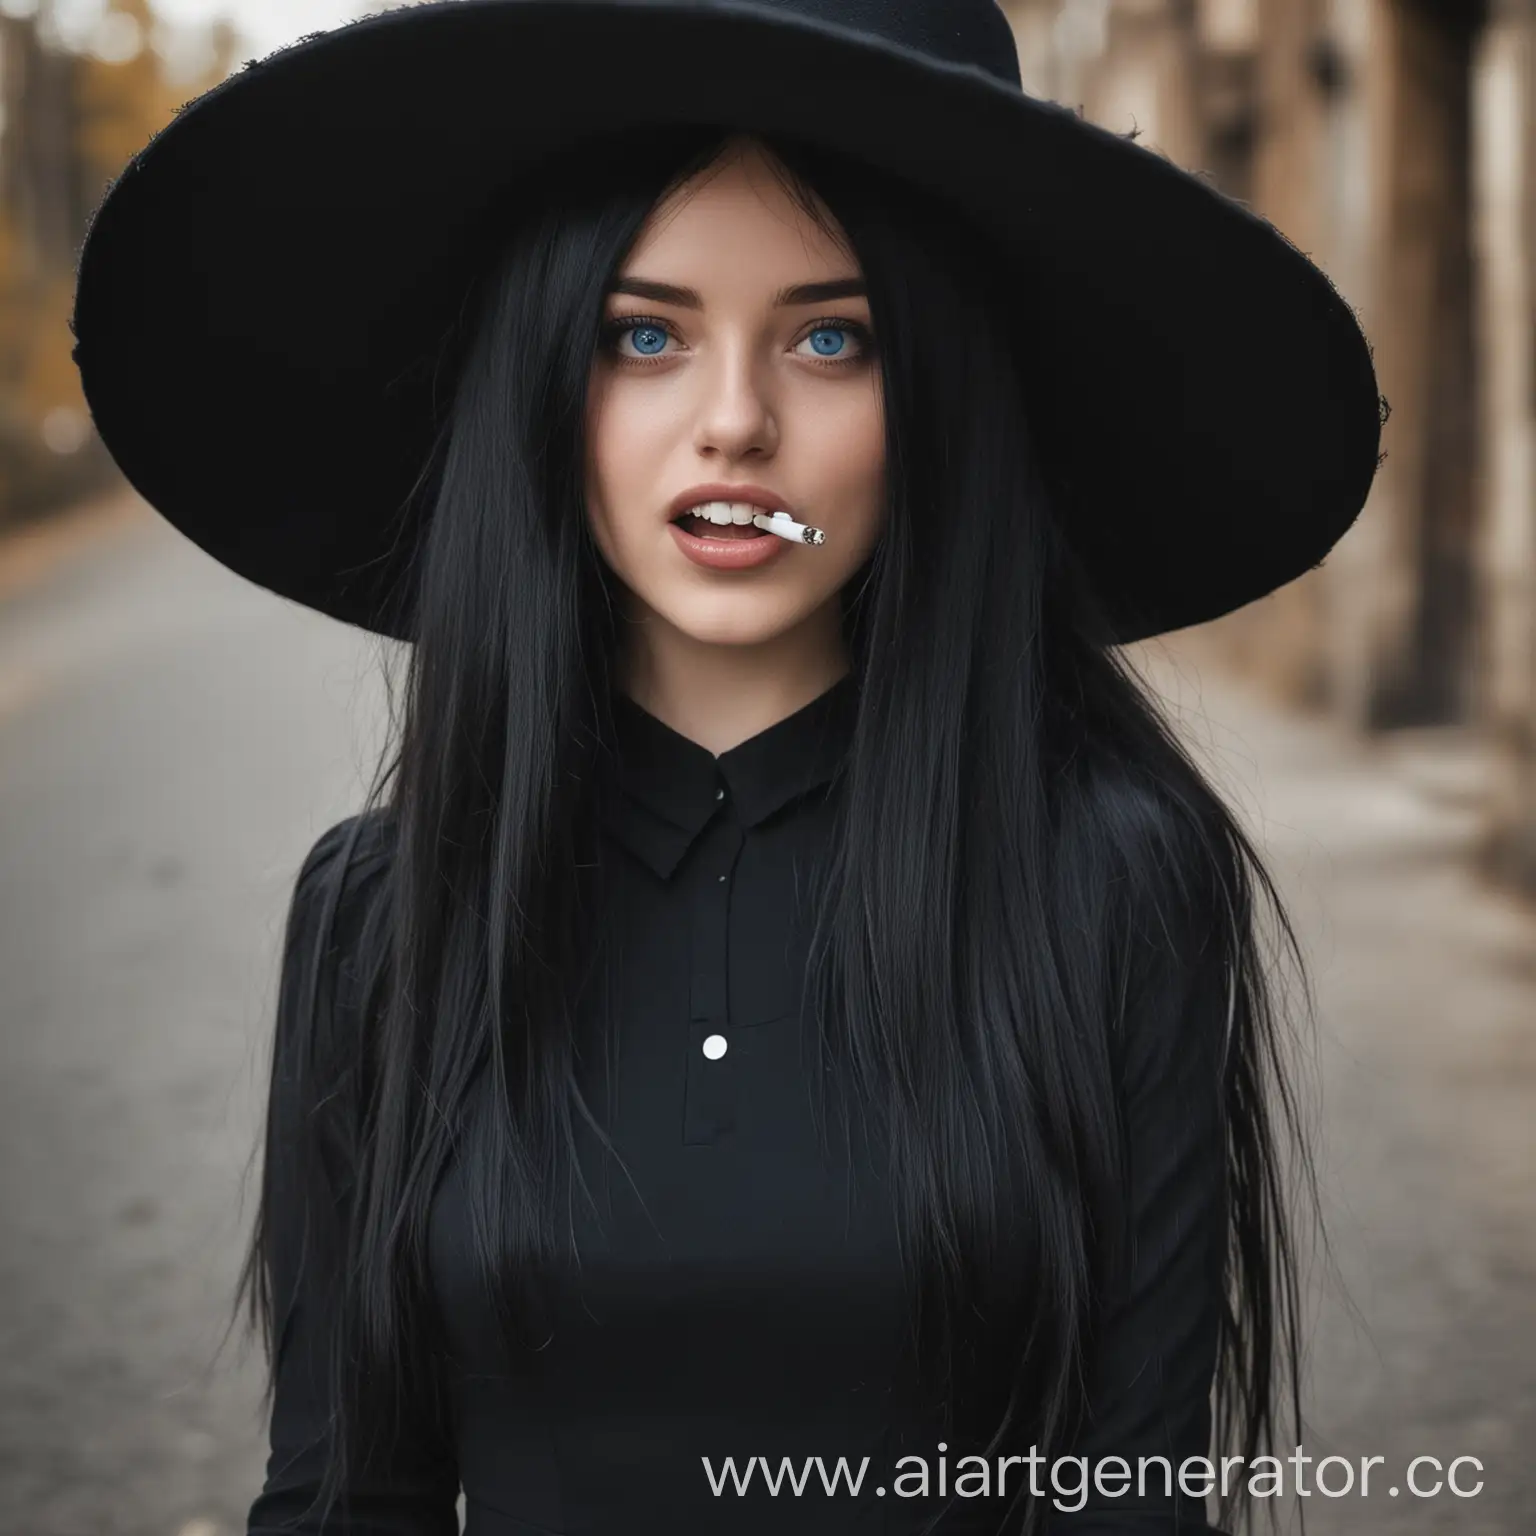 Девушка, длинные чёрные волосы, голубые глаза, в чёрном длинном платье, сигаретой в зубах, большой шляпой на голове